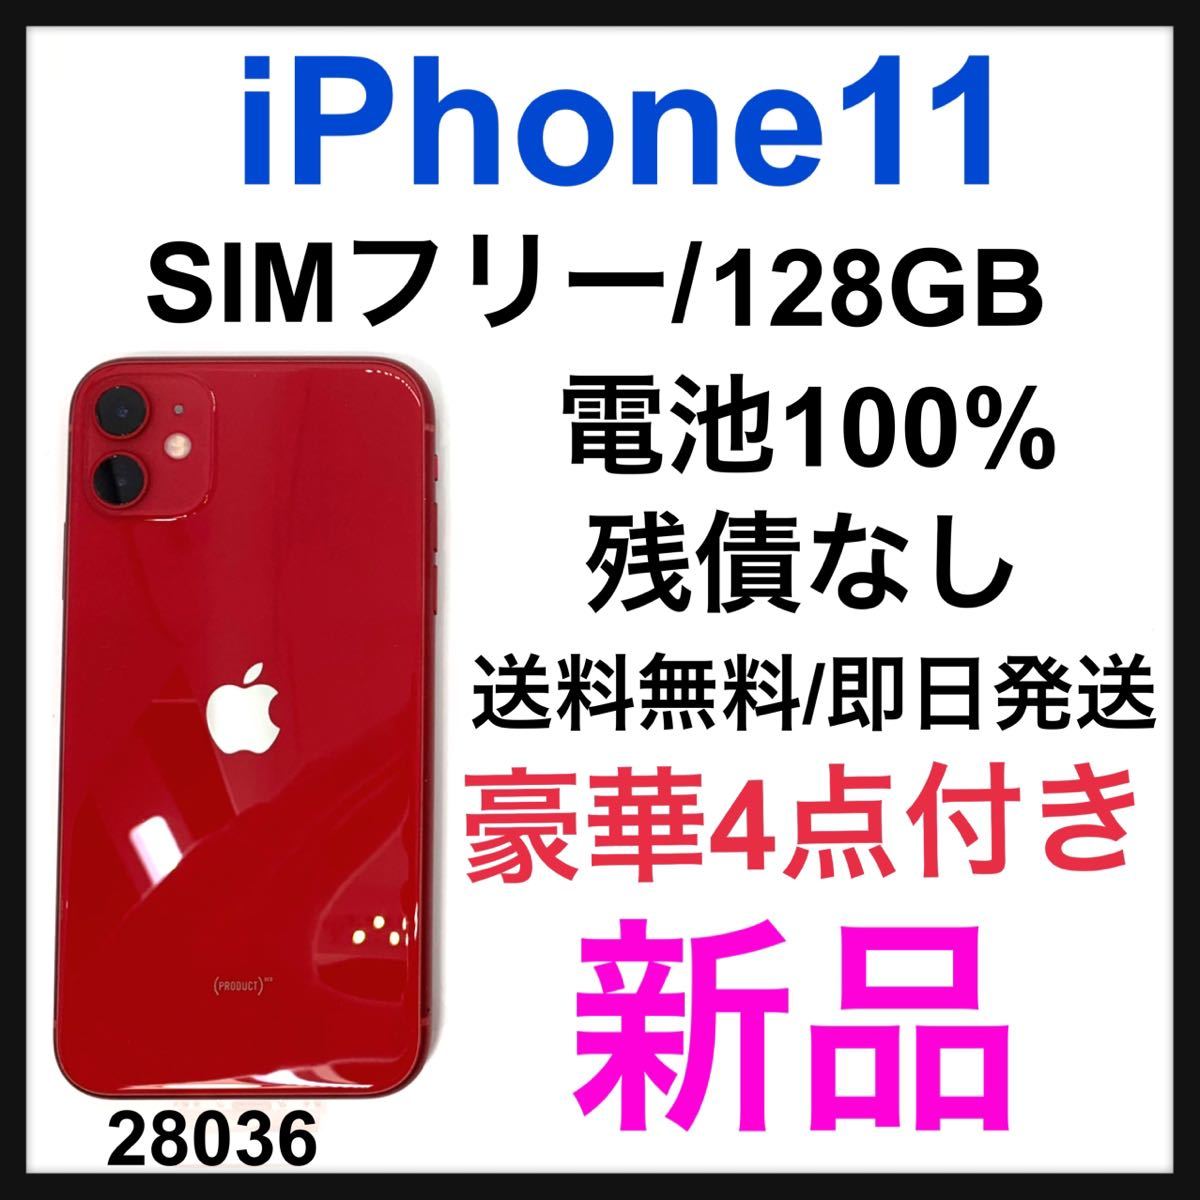 リアル 新品 iPhone SIMフリー GB 128 (PRODUCT)RED 11 iPhone